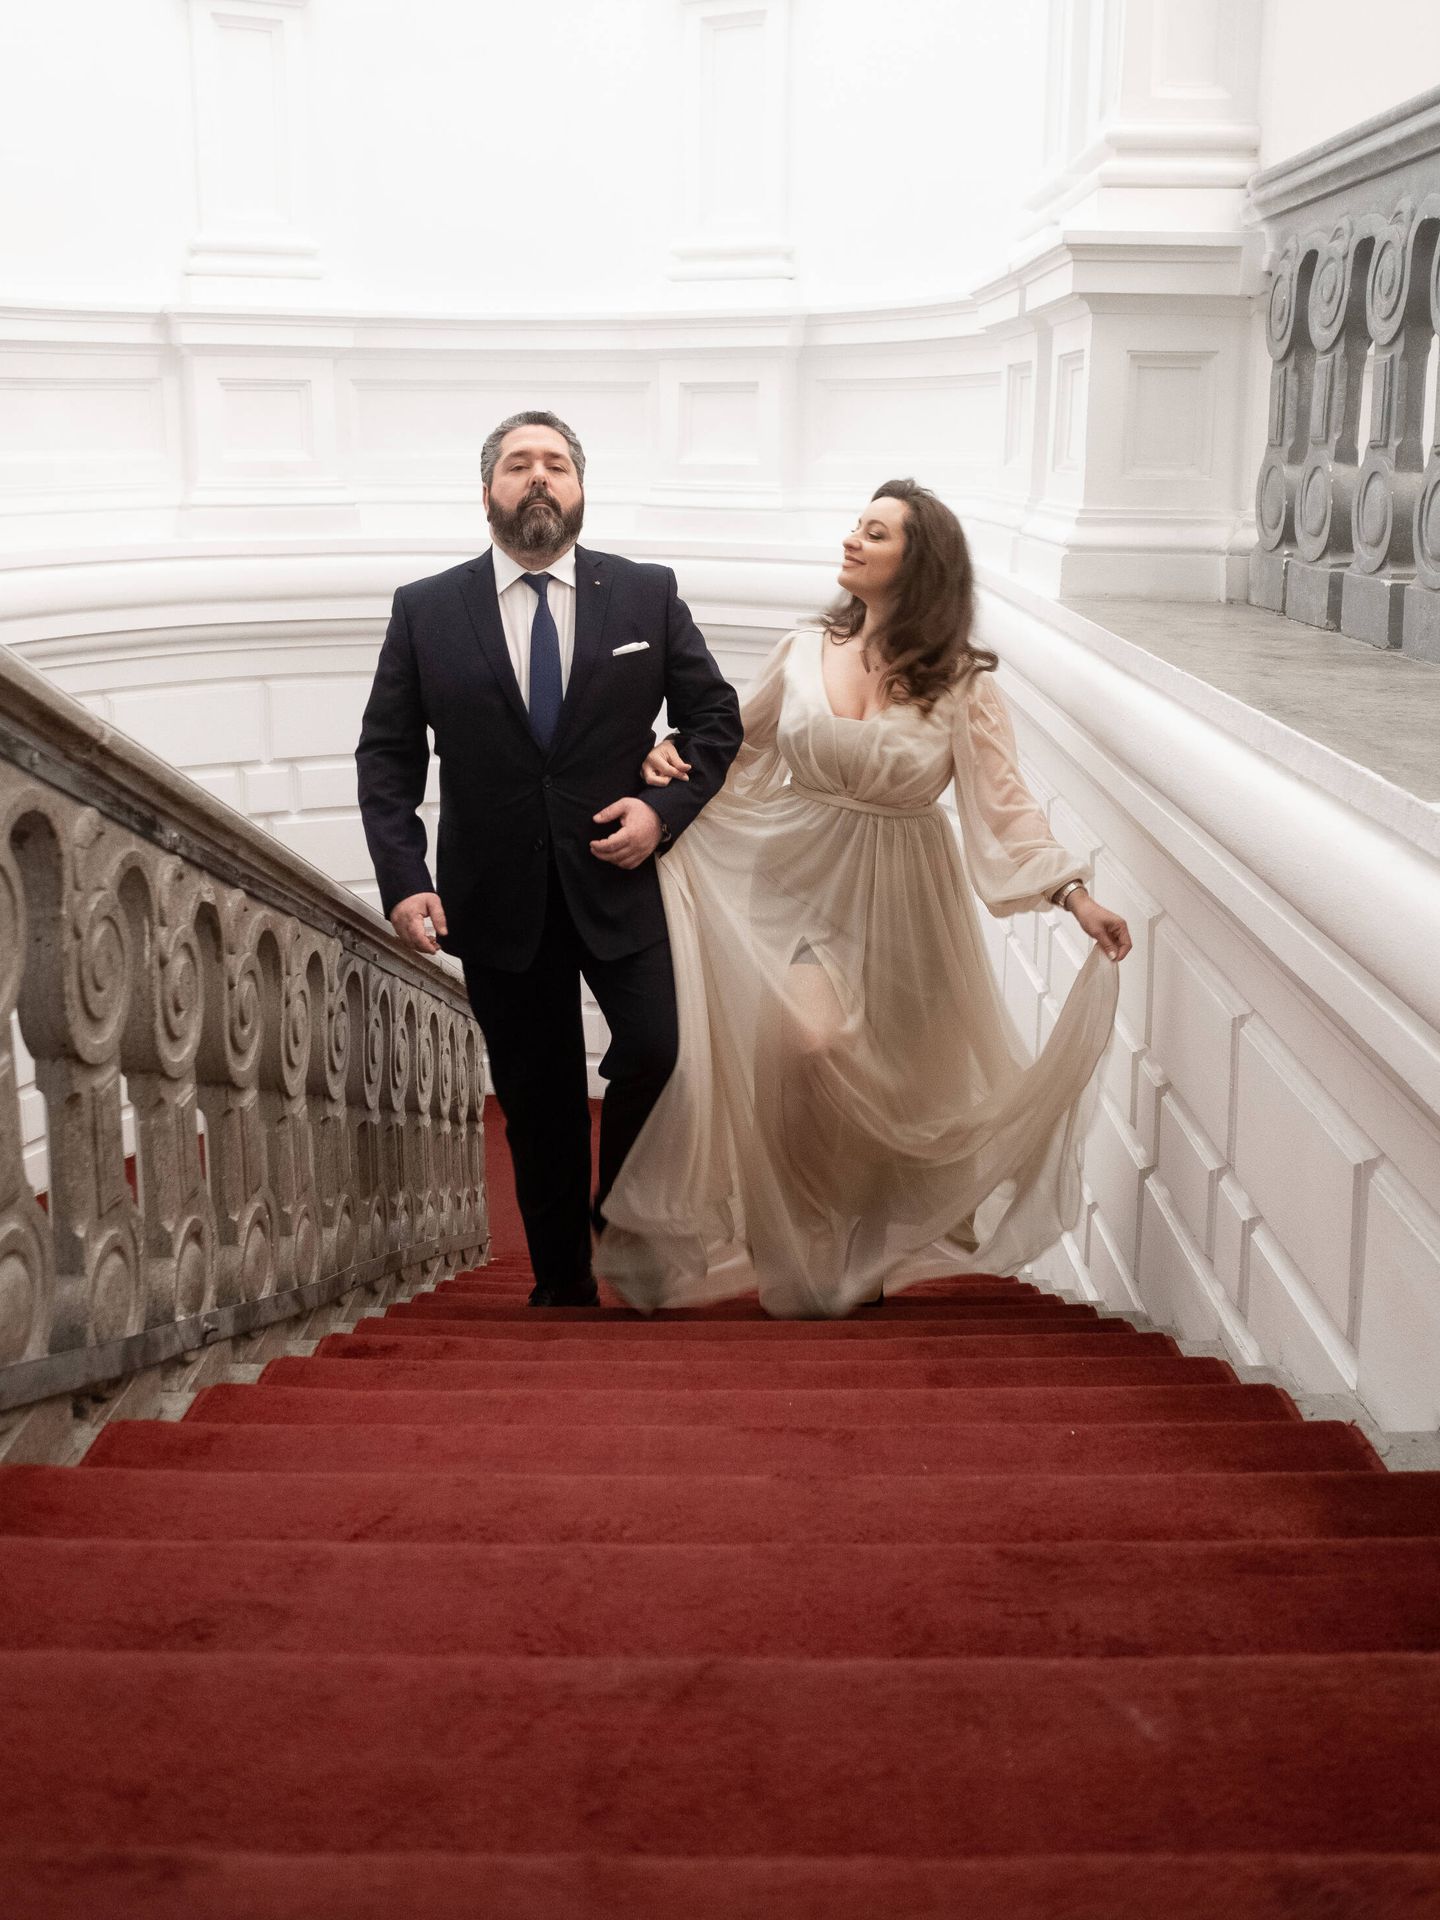 El 1 de octubre es la boda más esperada de las últimas décadas en Rusia. (Foto: Cancillería de la Casa Imperial de Rusia)